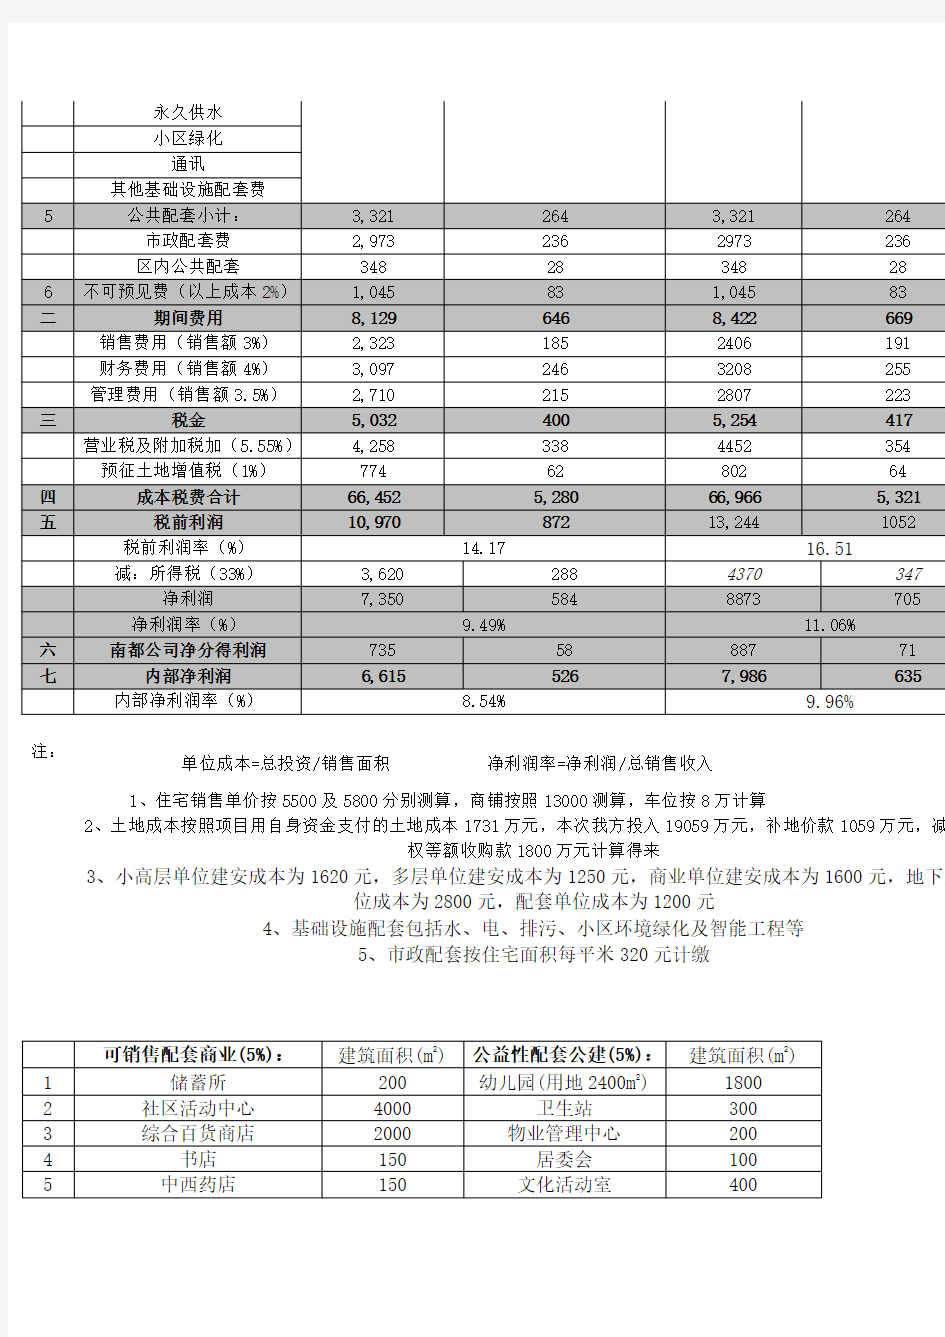 上海地块地项目开发成本利润测算表